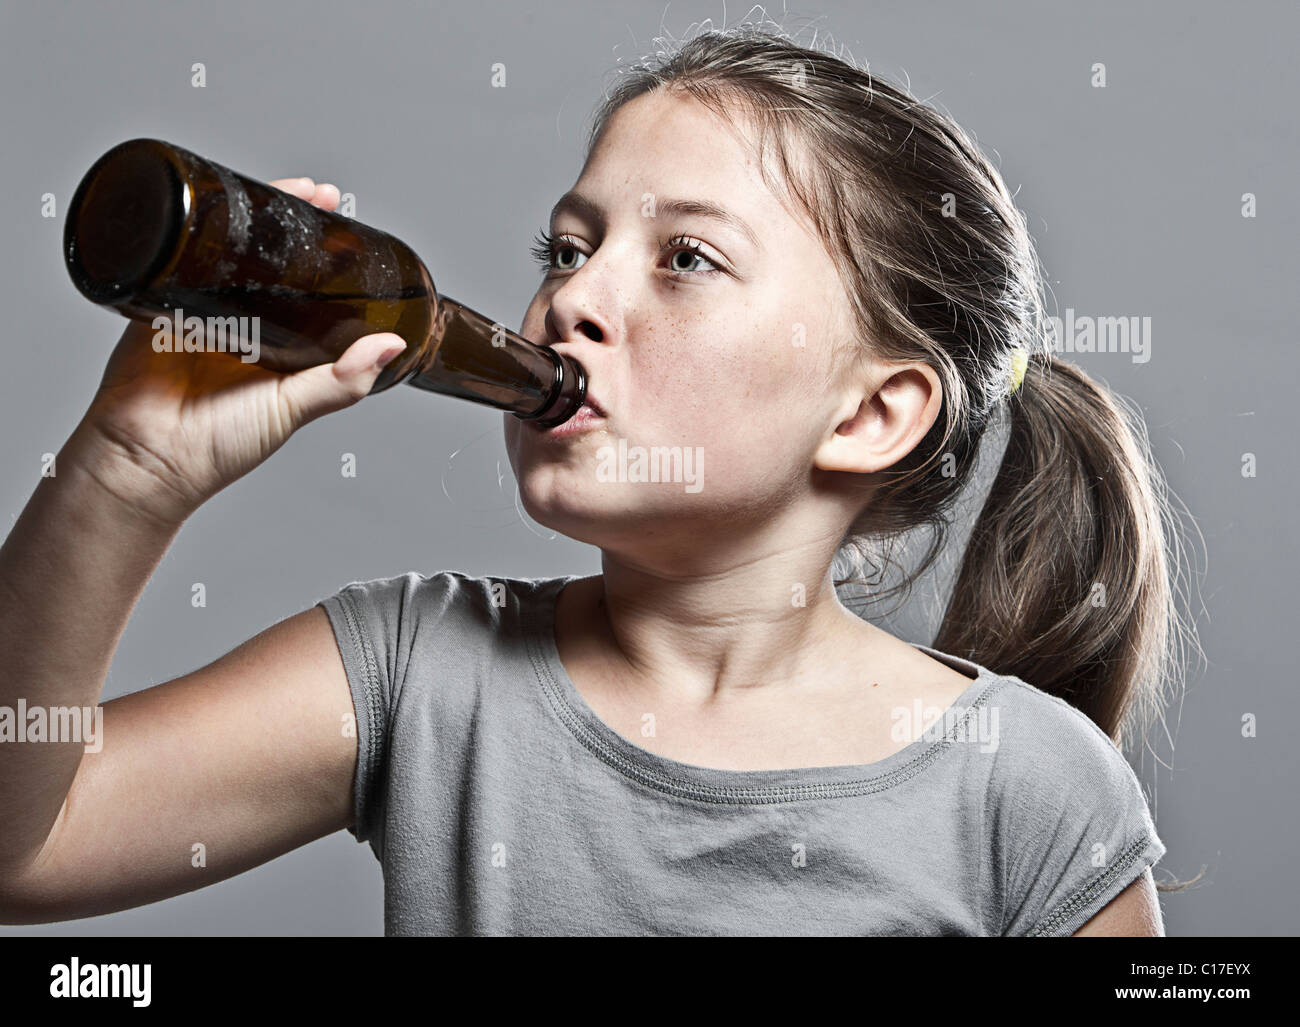 Teen Drinking Photos 39